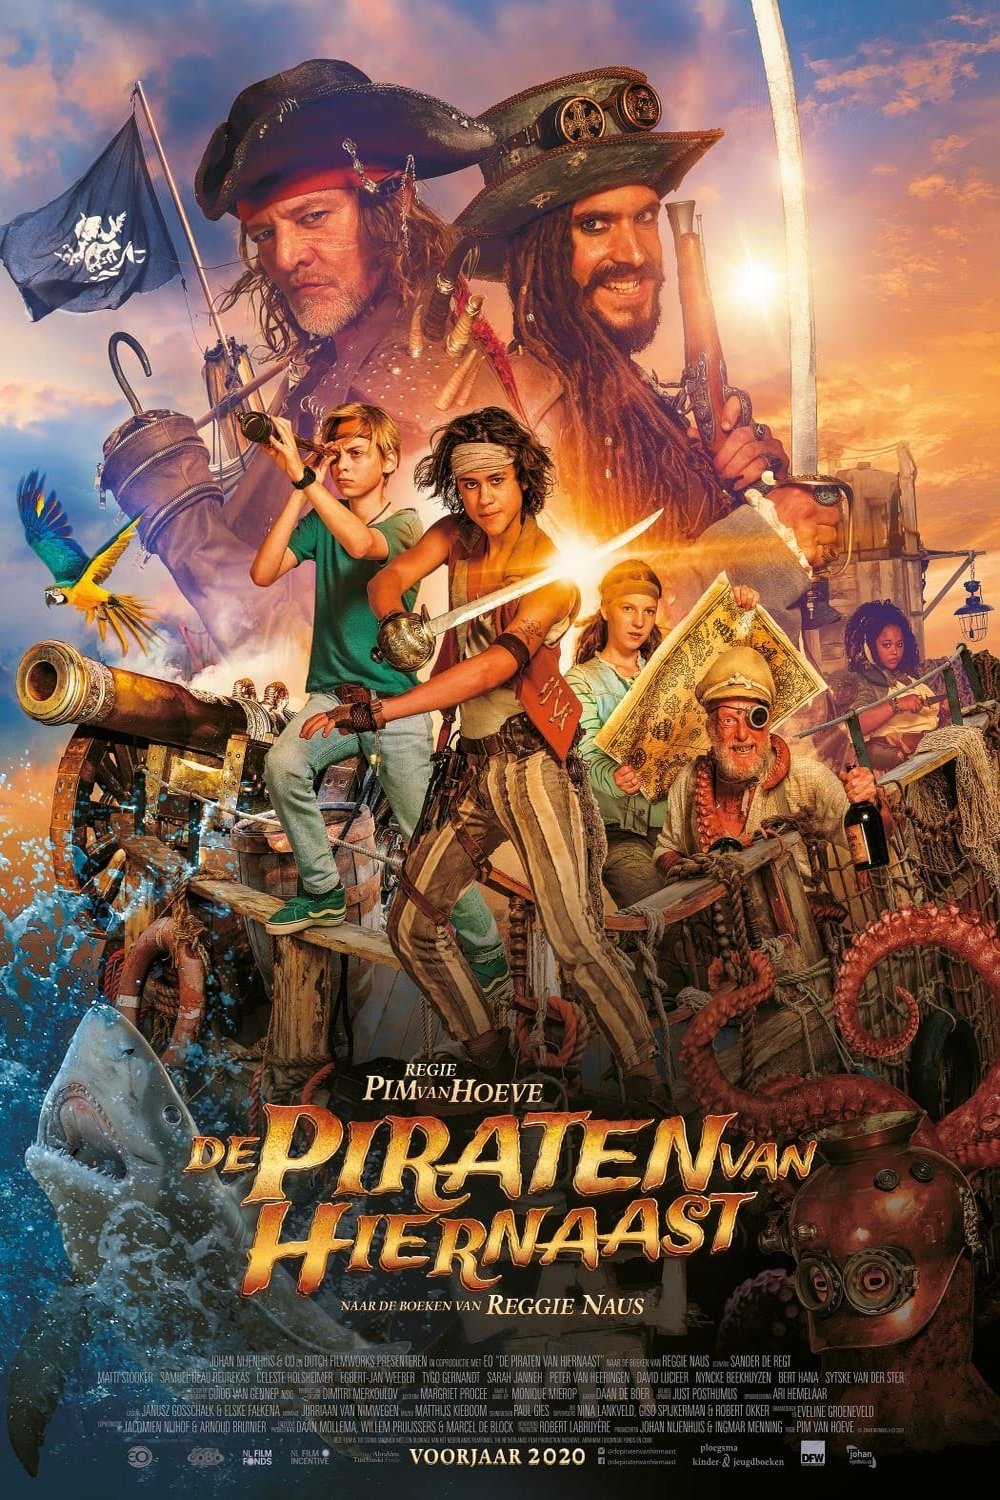 Dutch poster of the movie De piraten van hiernaast